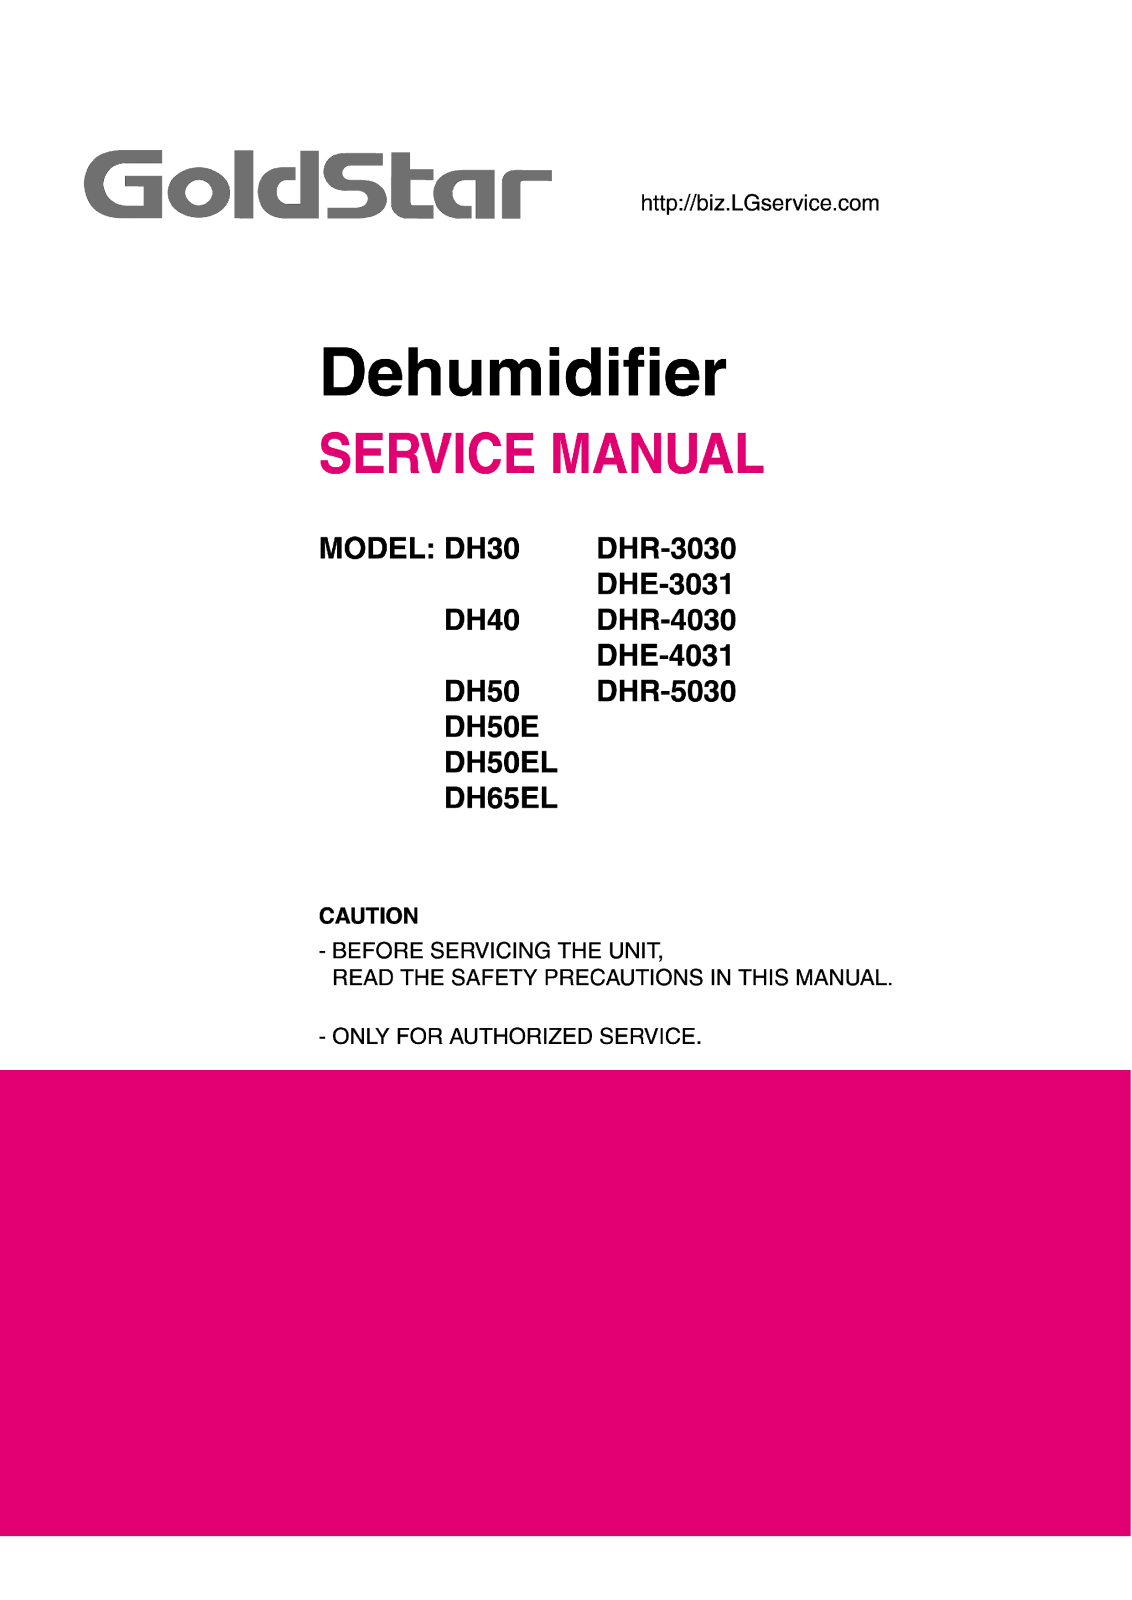 Goldstar Dhe-3031, Dhe-3031 Service Manual